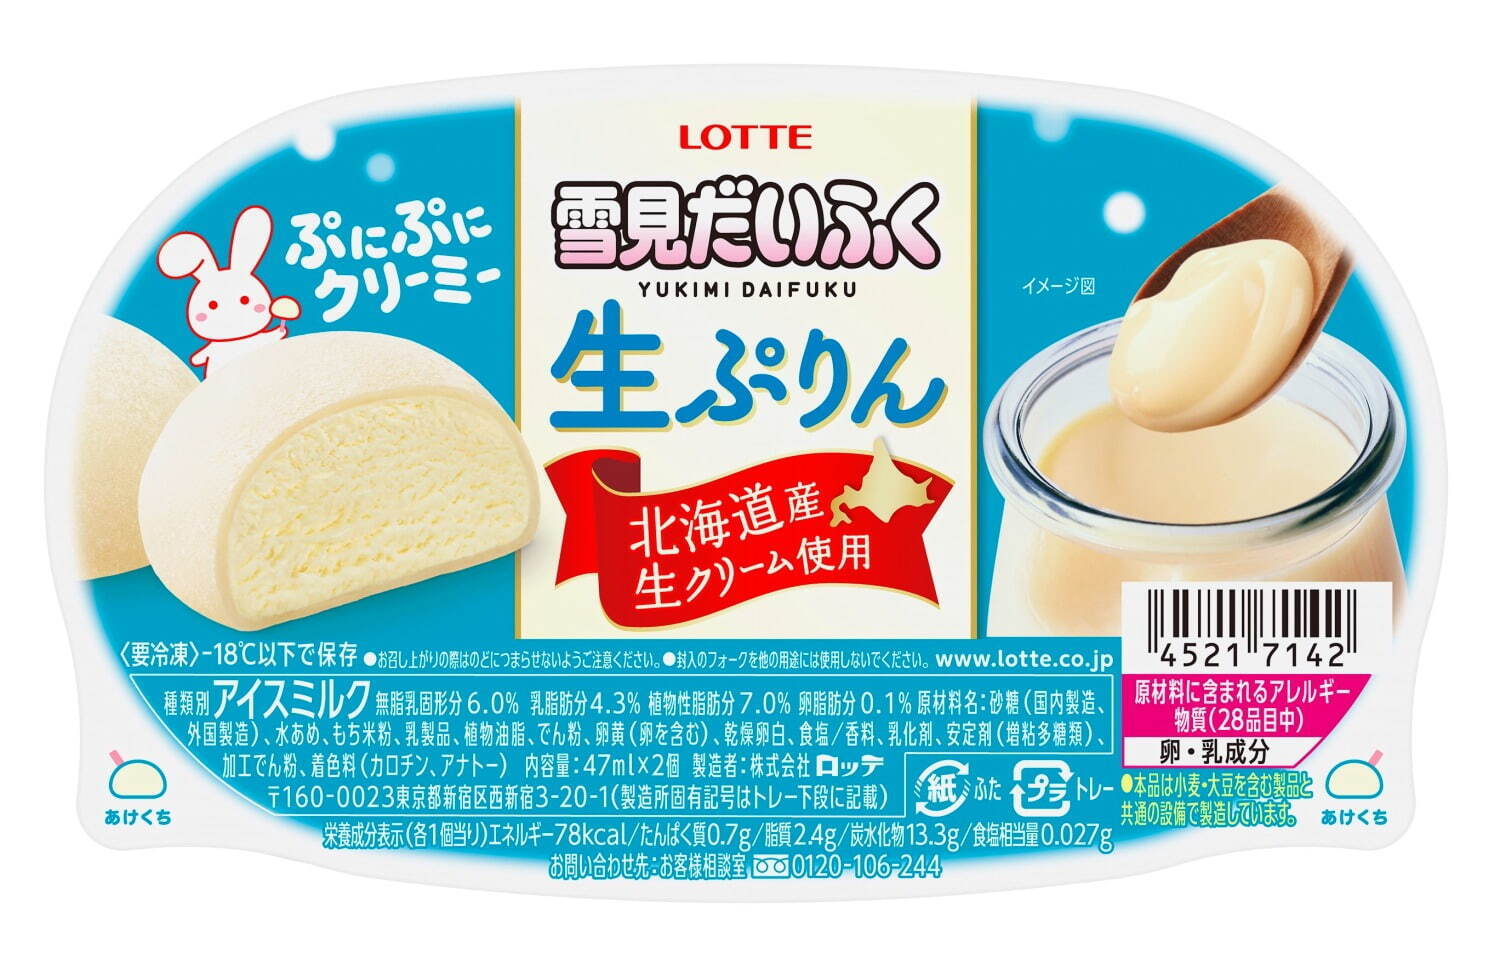 新作「雪見だいふく生ぷりん」北海道産生クリームアイス×おもち